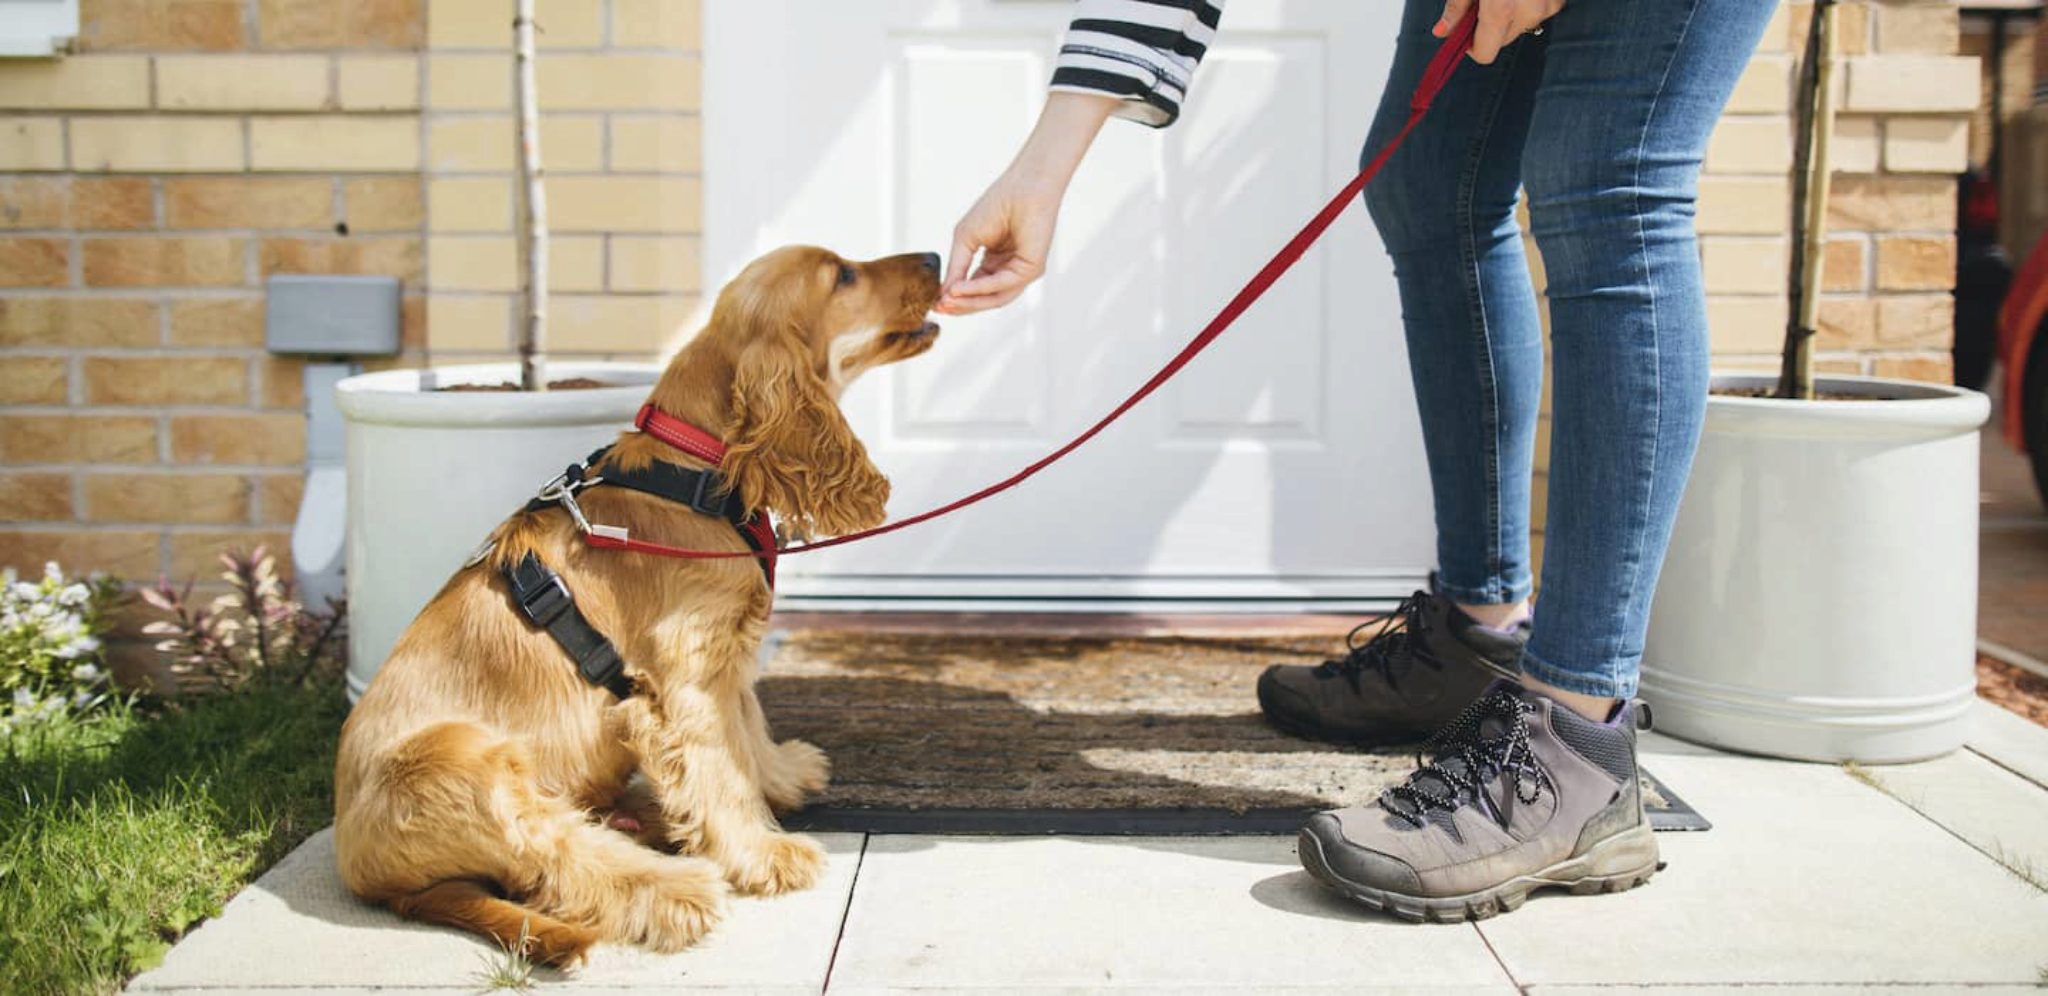 Come Diventare Un Dog Sitter Su Rover E Consigli Per Le Attivita Di Pet Sitting